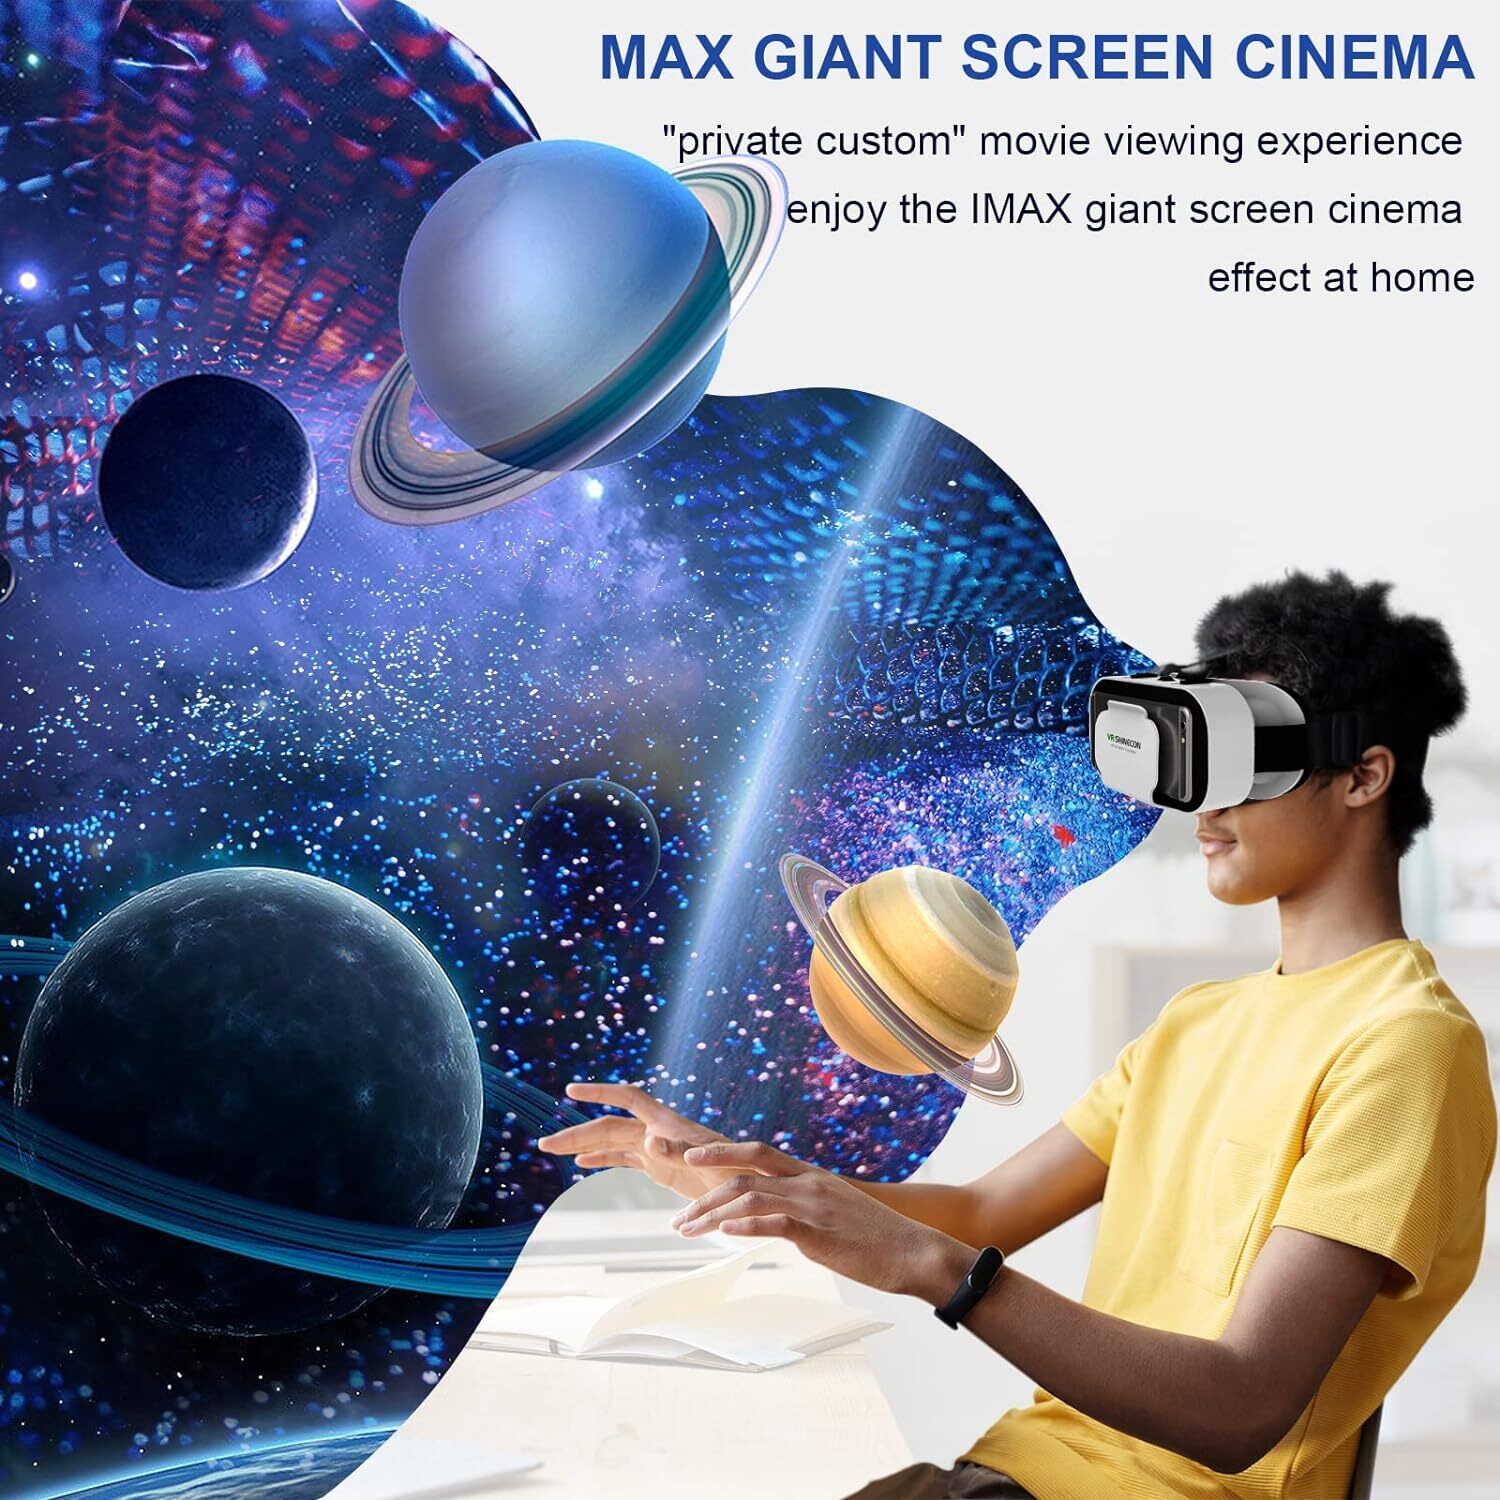 VR Brille Virtual Reality Headset 3D 360° für Smartphones Handy für Android iOS